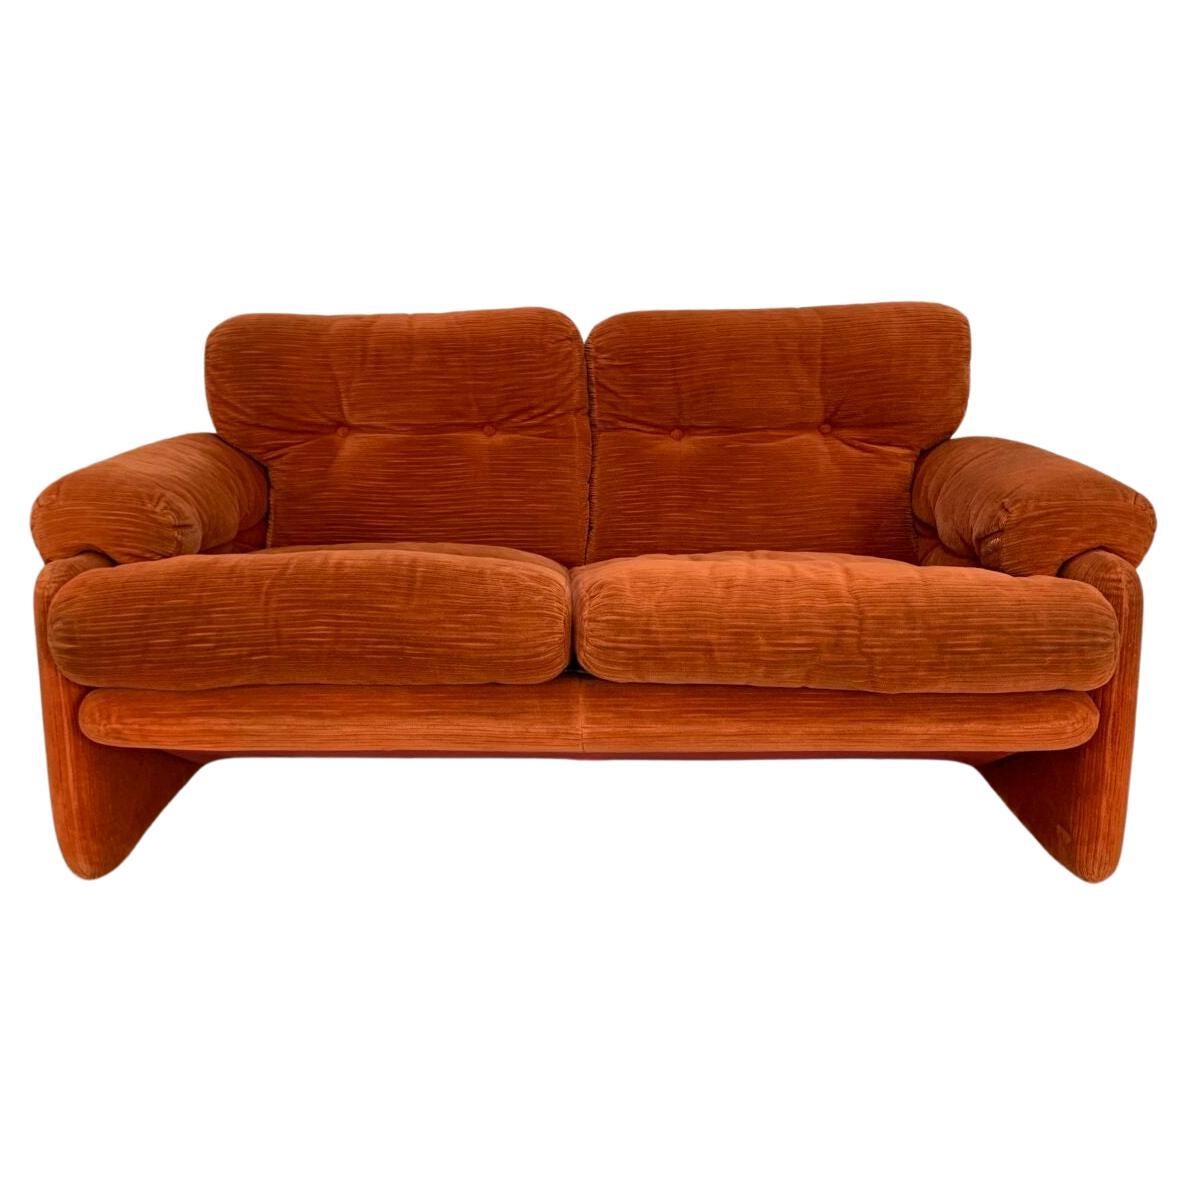 B&B Italia "Coronado" 2-Seat Sofa - In Orange Velvet - RRP £6000 For Sale